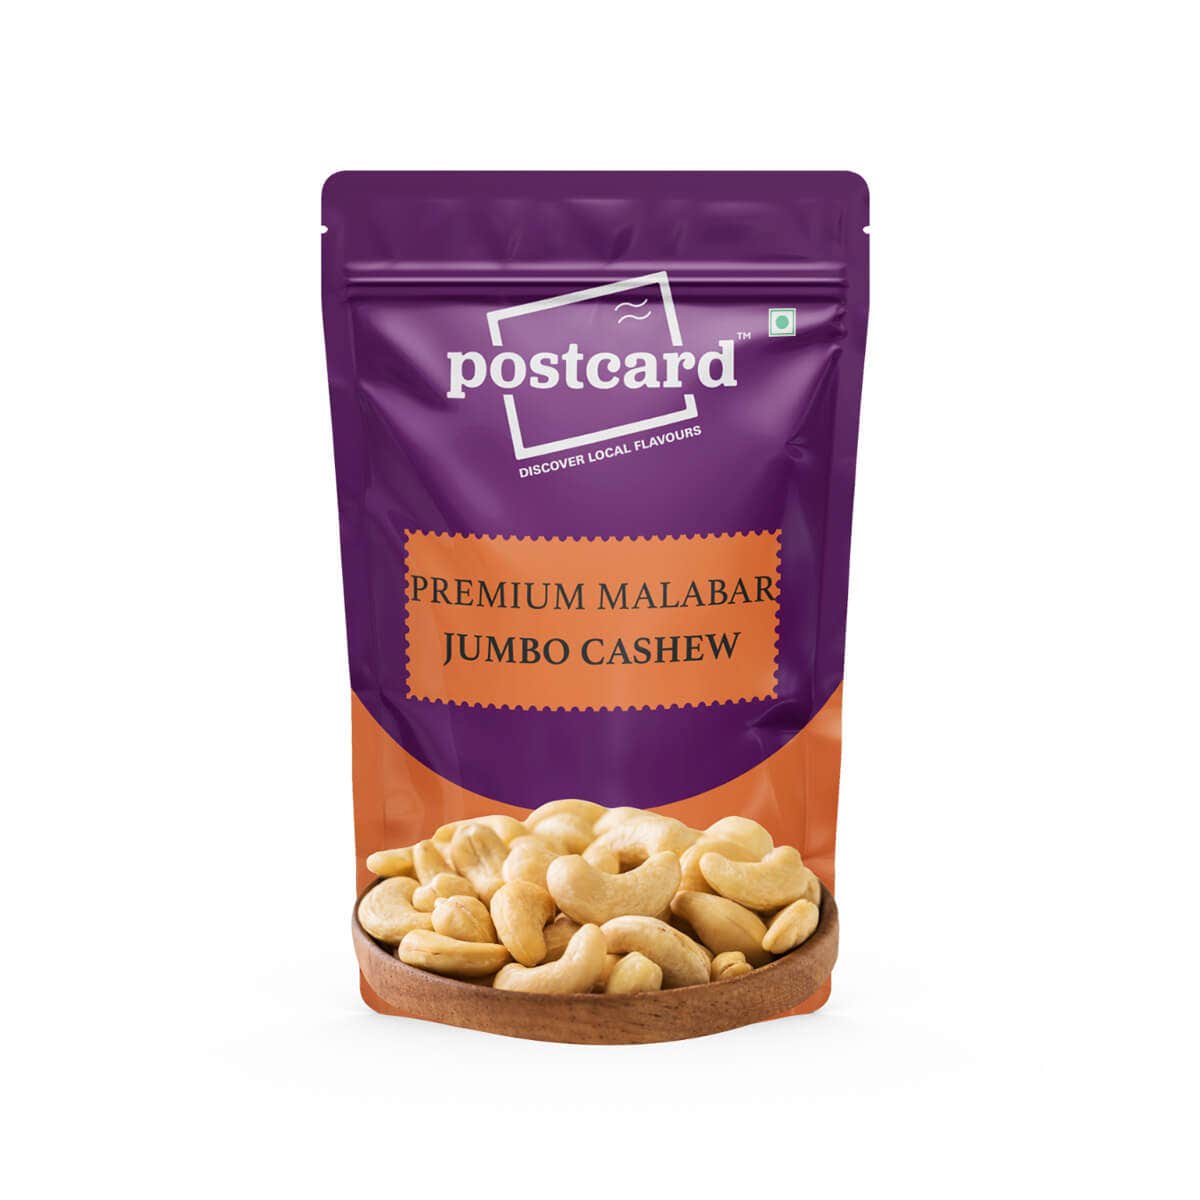 premium malabar jumbo cashew online